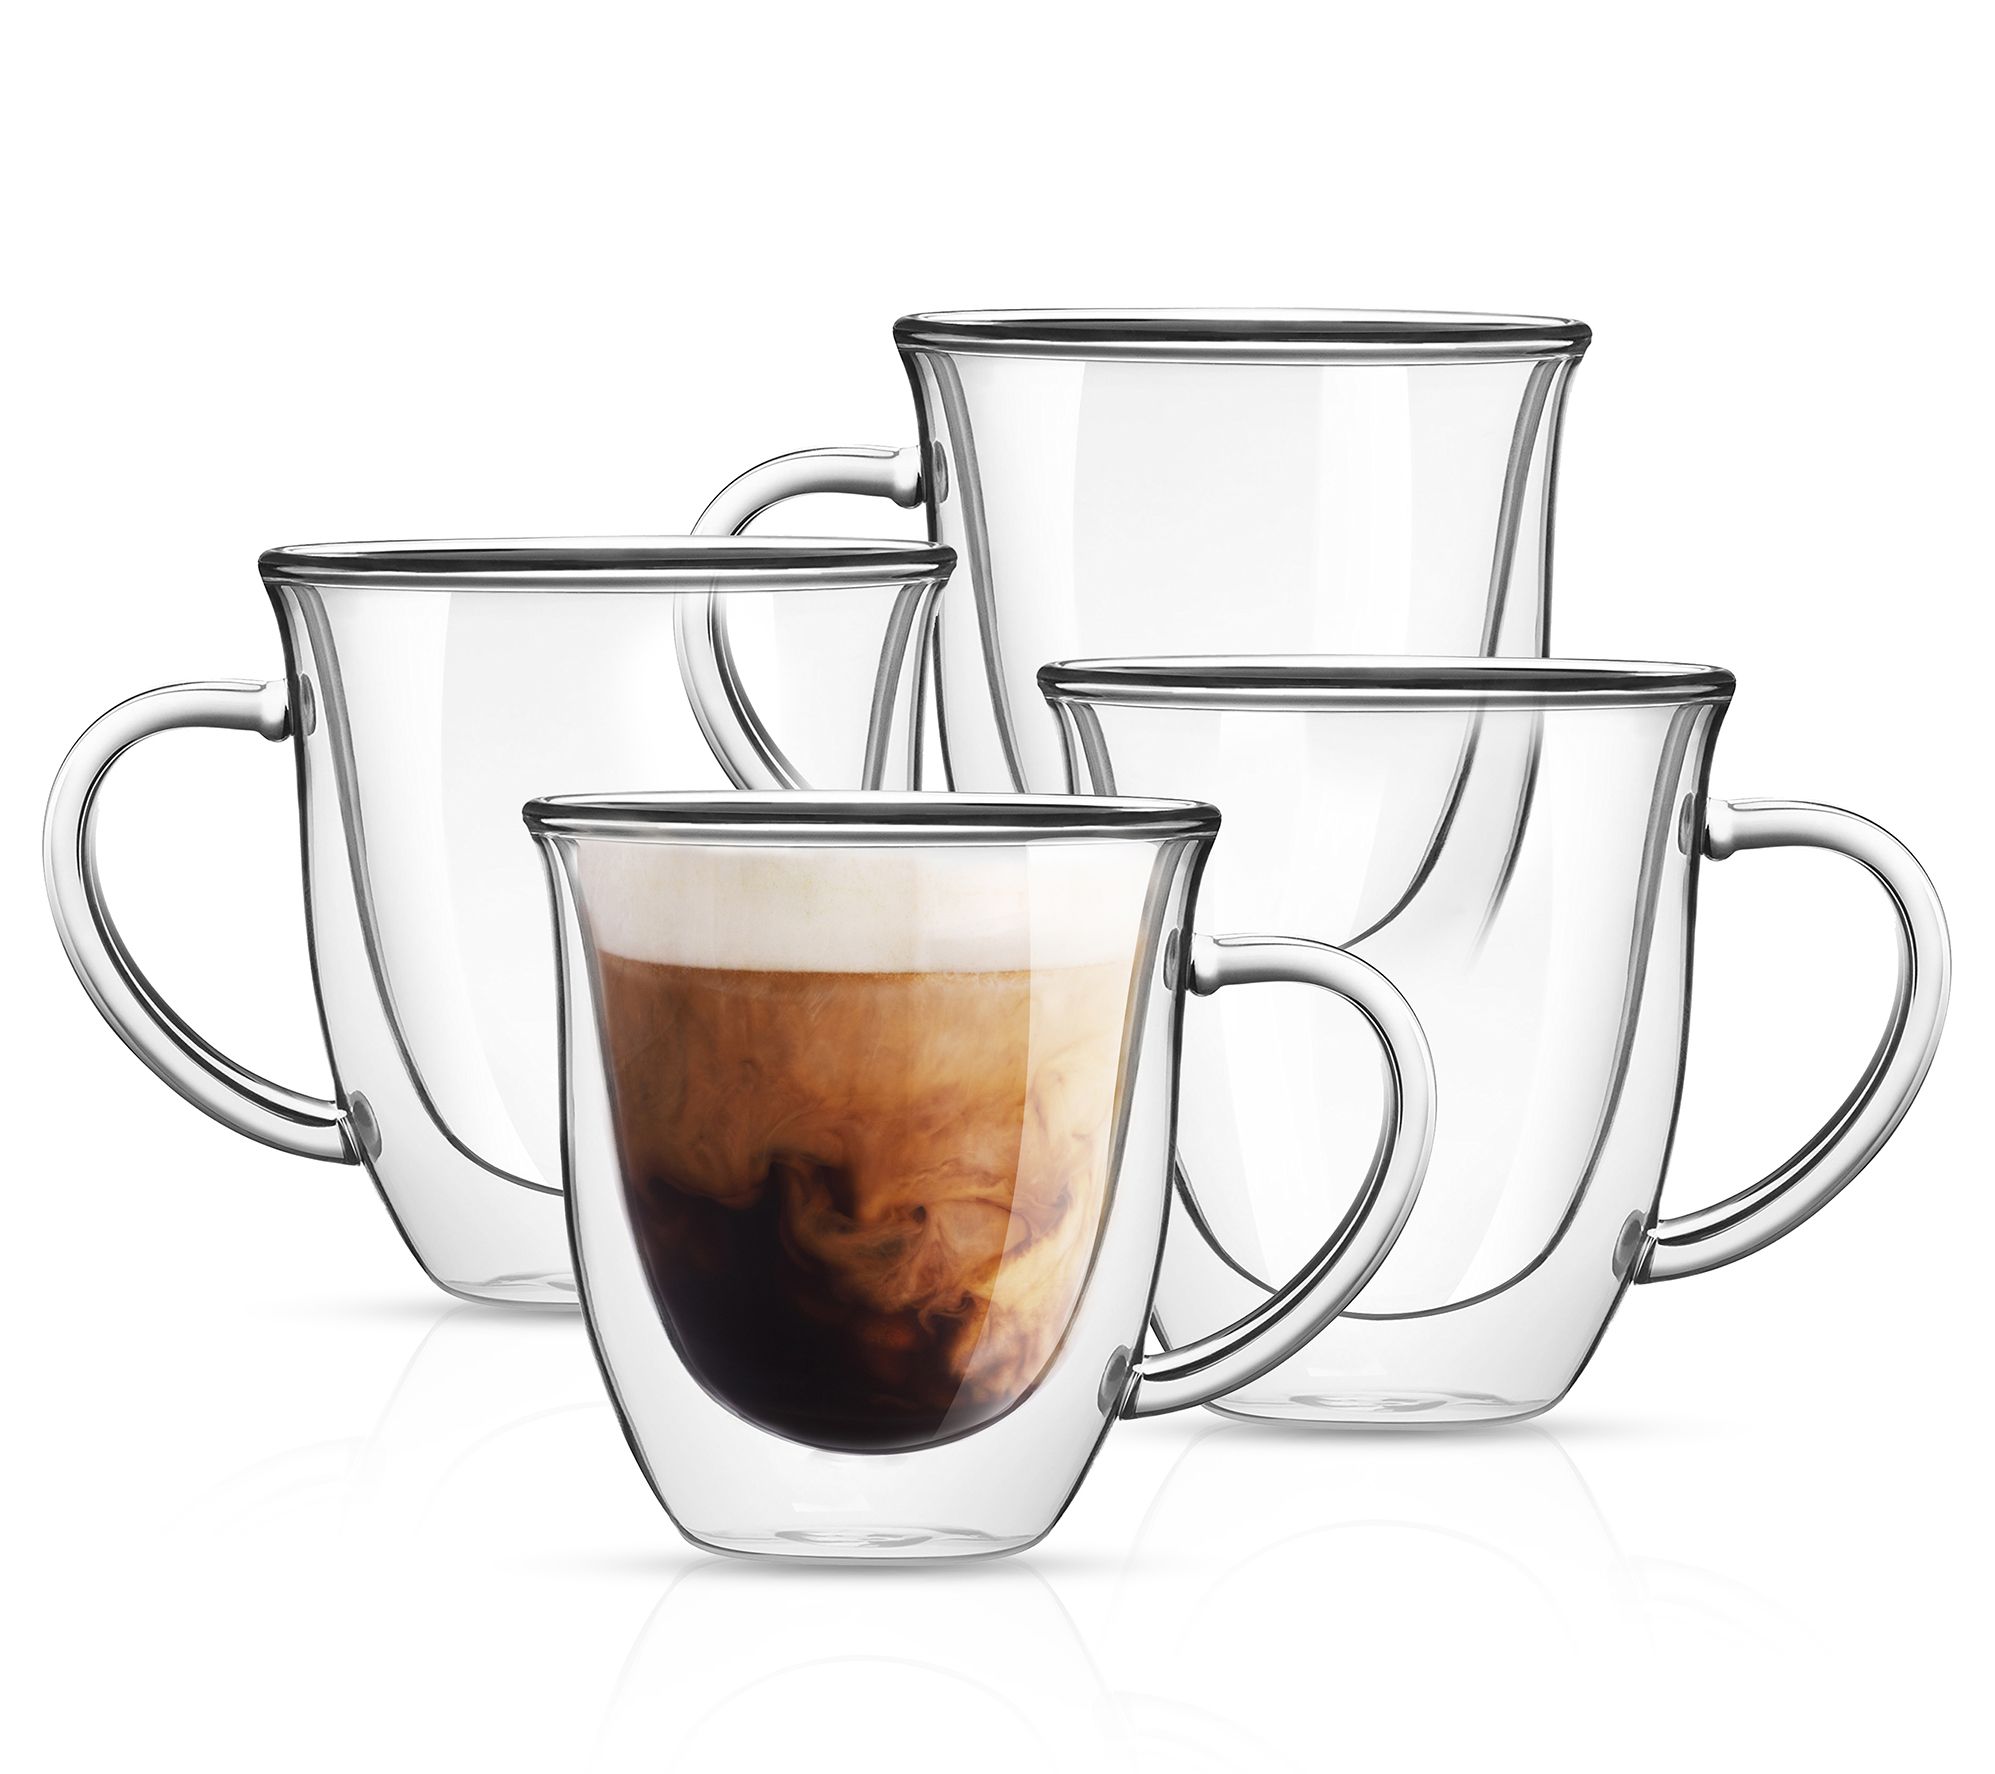 JoyJolt 13 oz. Caleo Double Wall Glass Insulated Coffee Mug (Set